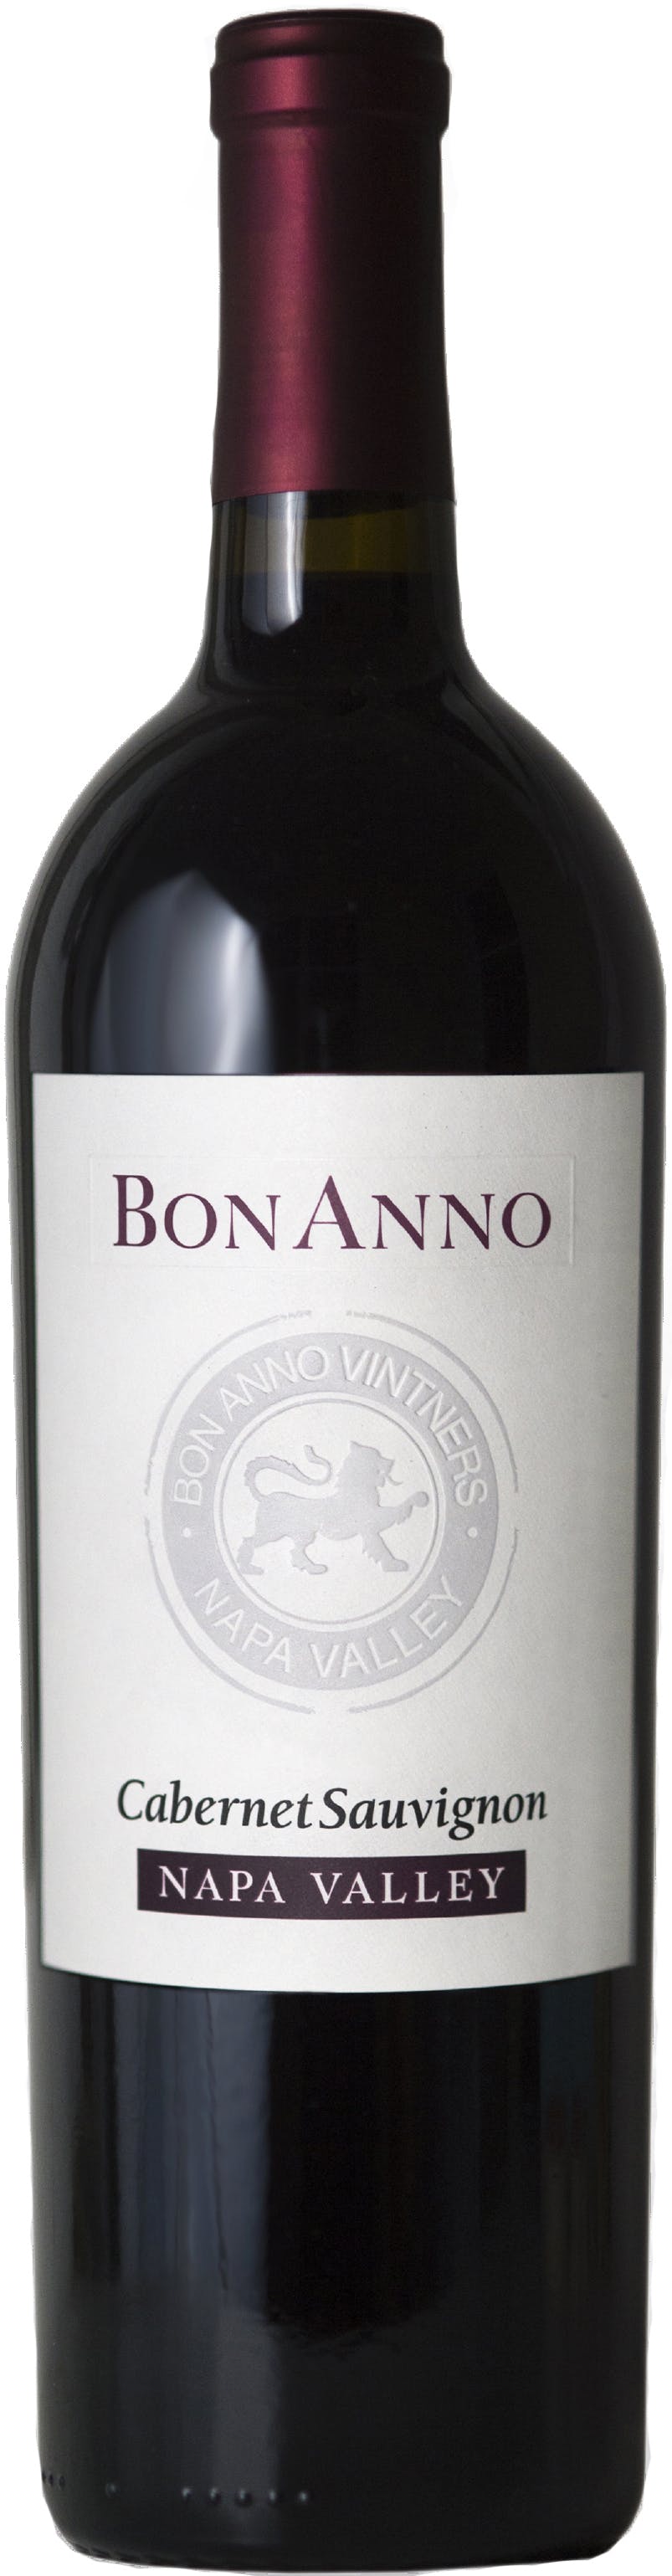 BonAnno Napa Wine 750ml World - Cabernet 2019 Spirit & Russo Carlo Sauvignon Valley